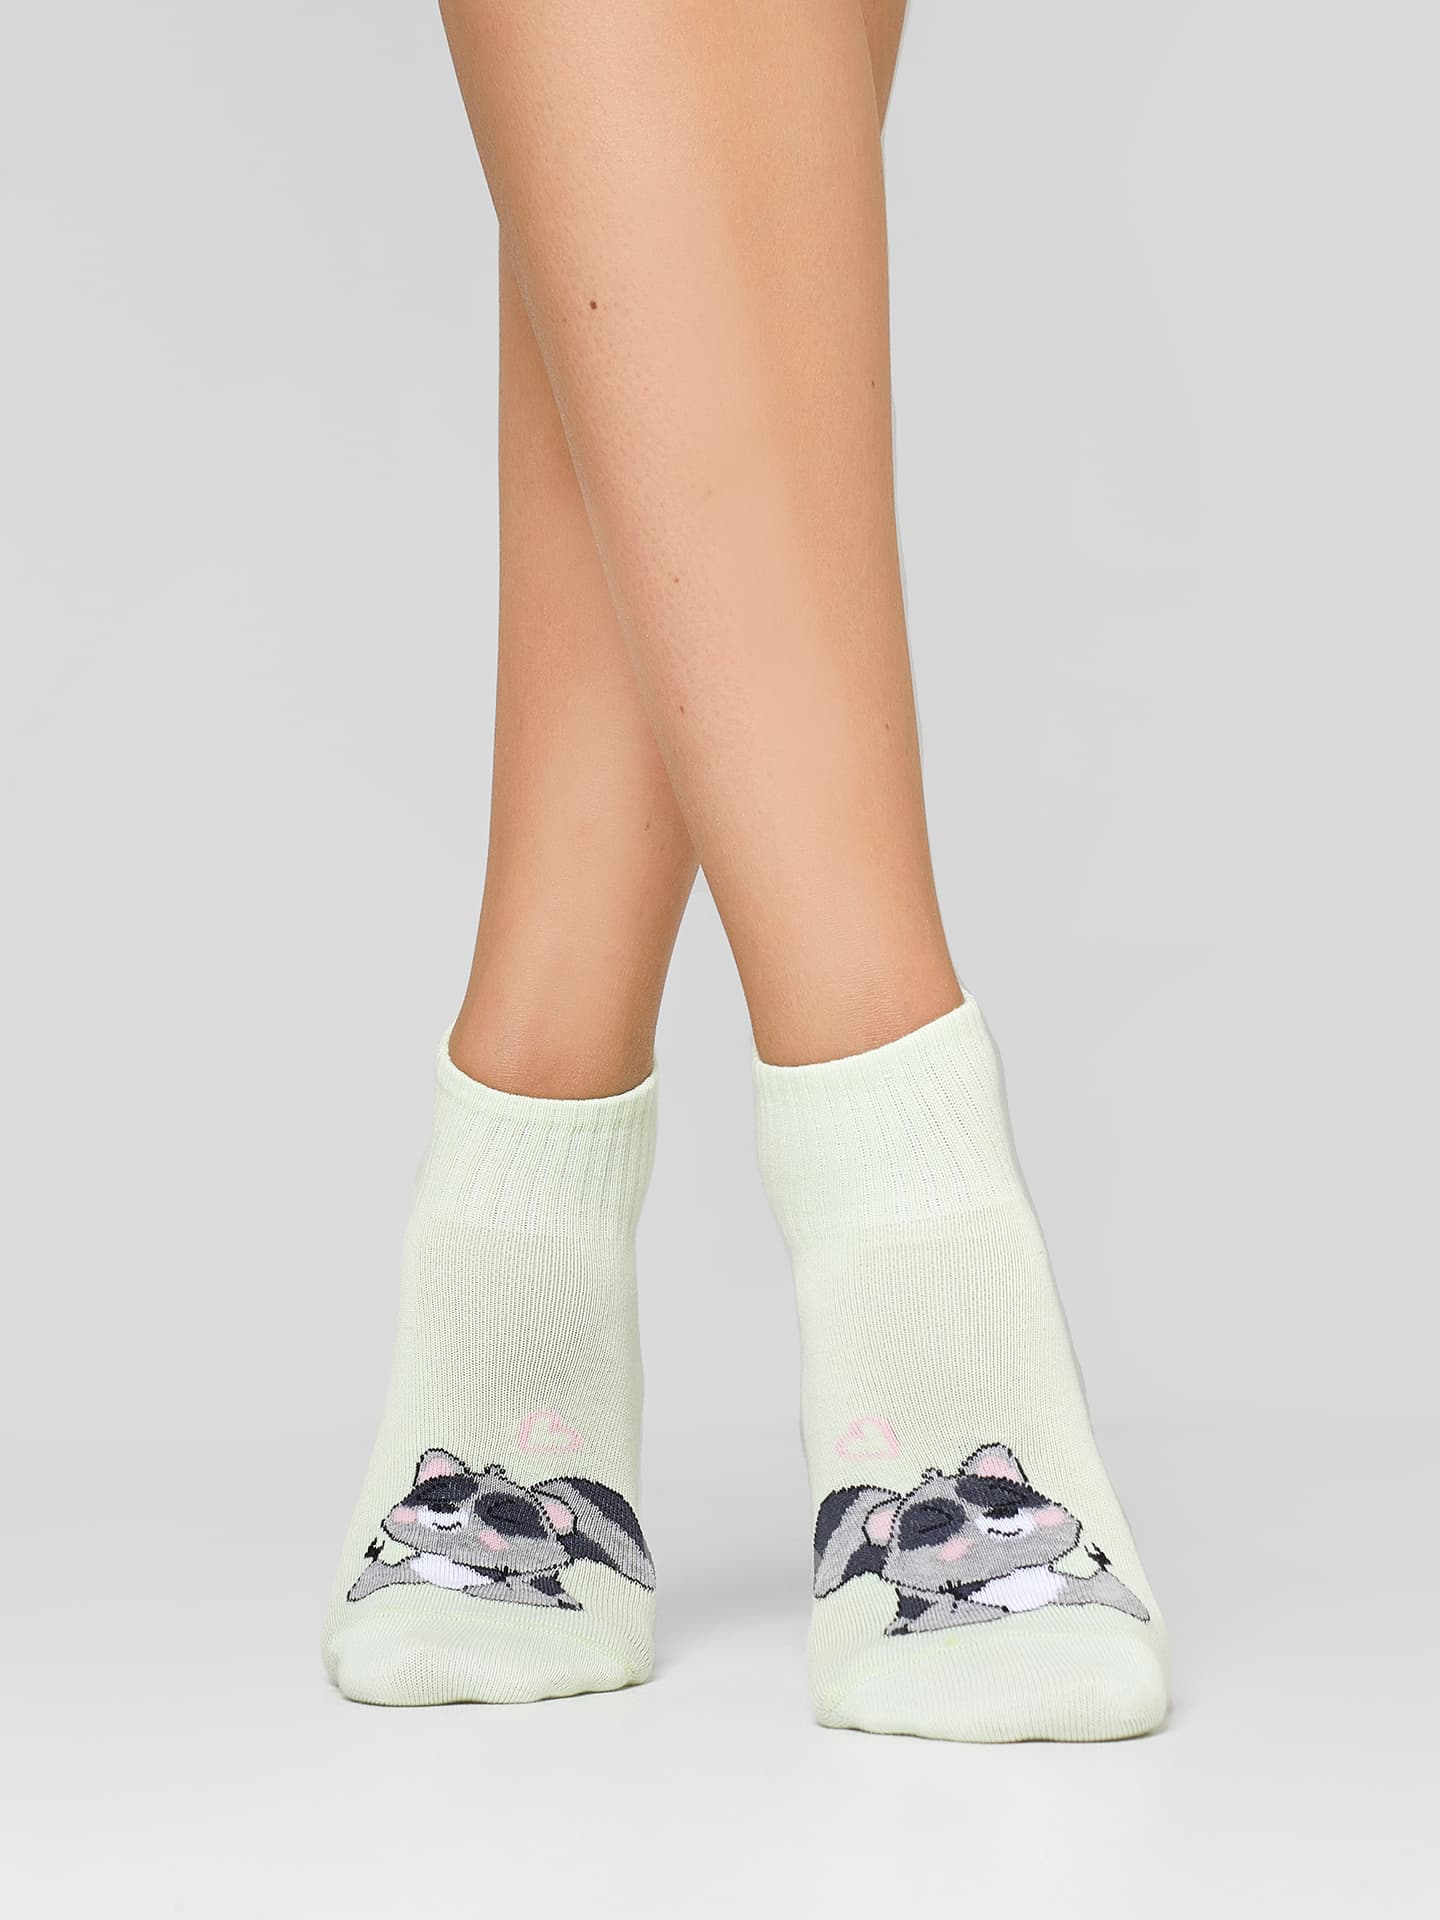 Женские укороченные носки в оттенке мохито с изображениями енотов